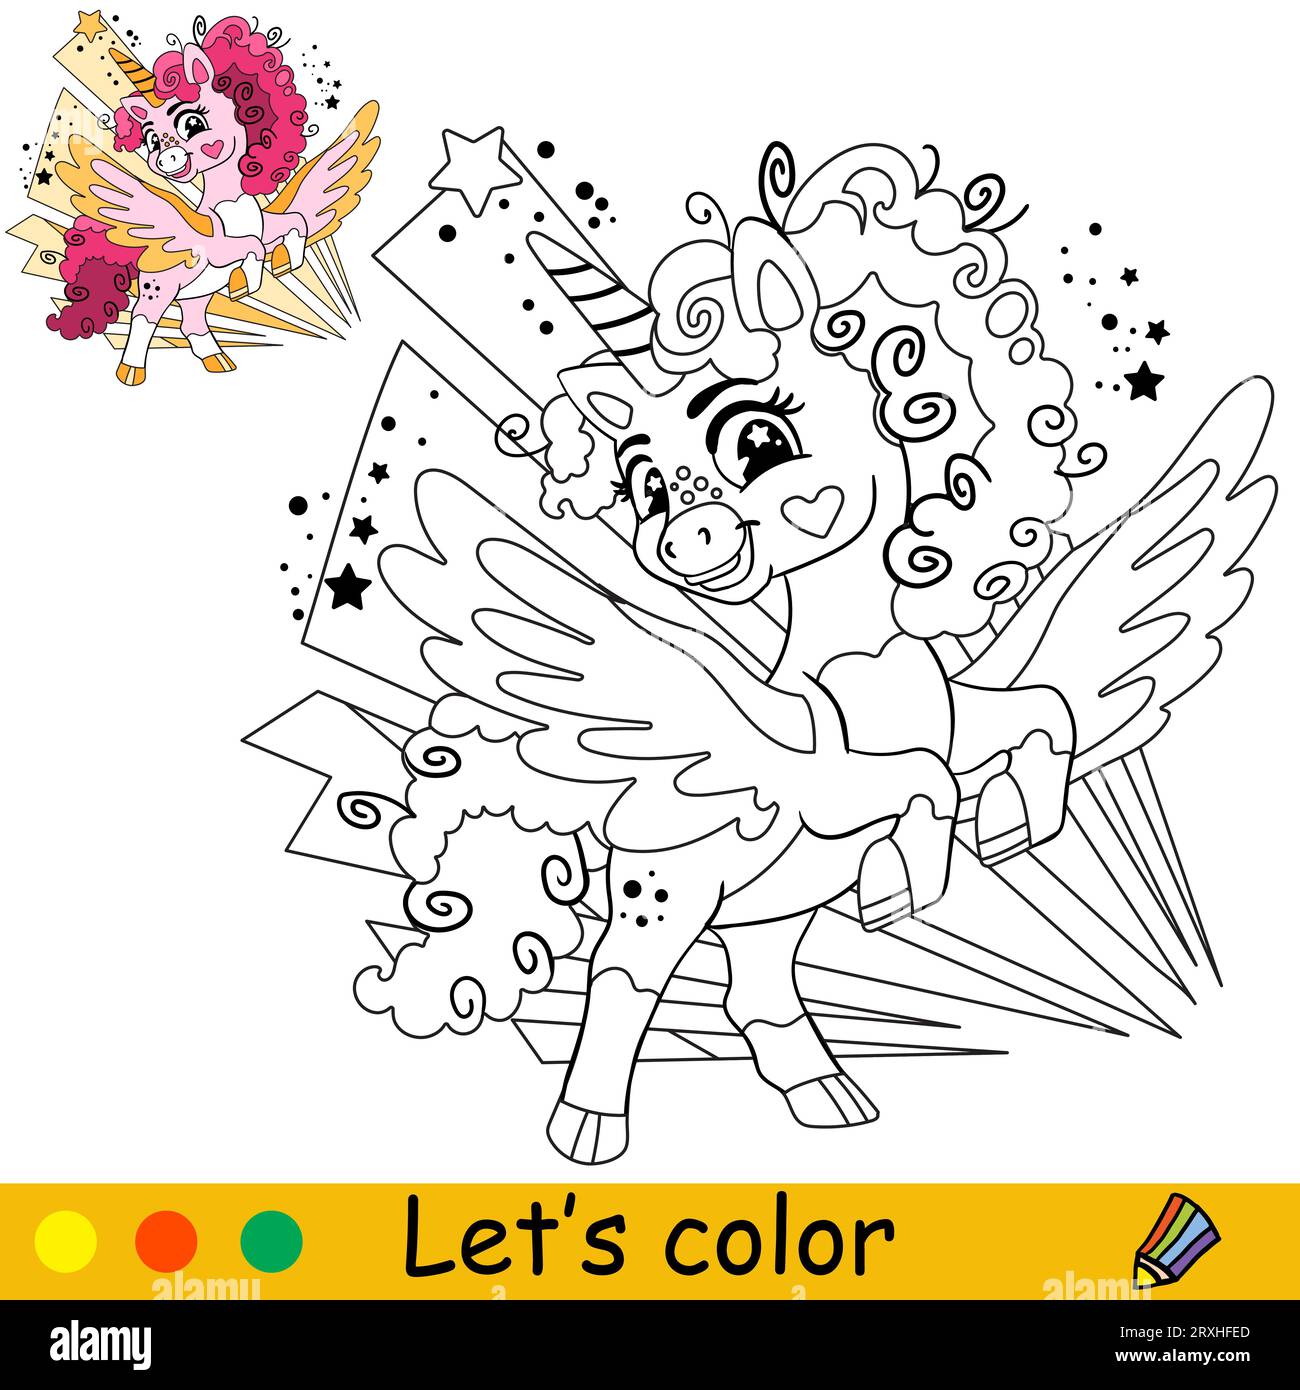 Cartoni animati simpatico unicorno con sfondo astratto. Pagina di libri da colorare per bambini. Unicorn. Illustrazione vettoriale isolata in bianco e nero con colorazione Illustrazione Vettoriale